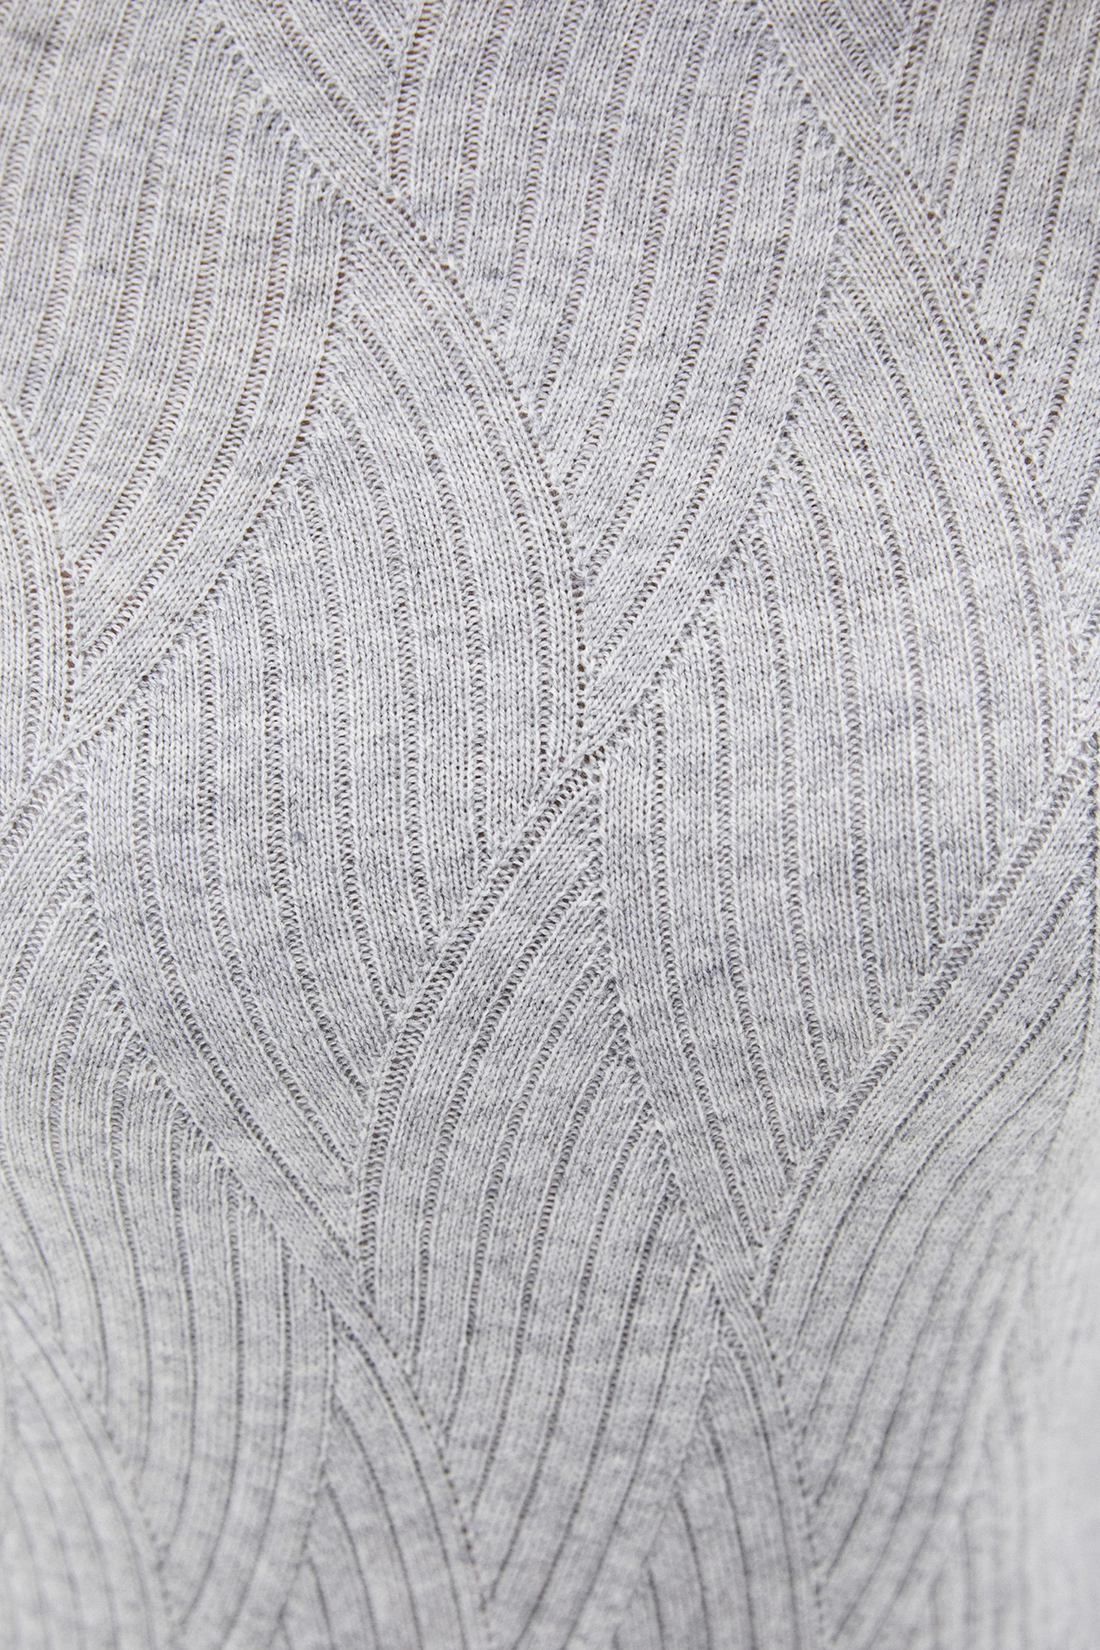 Джемпер (арт. baon B130549), размер XXL, цвет silver melange#серый Джемпер (арт. baon B130549) - фото 3